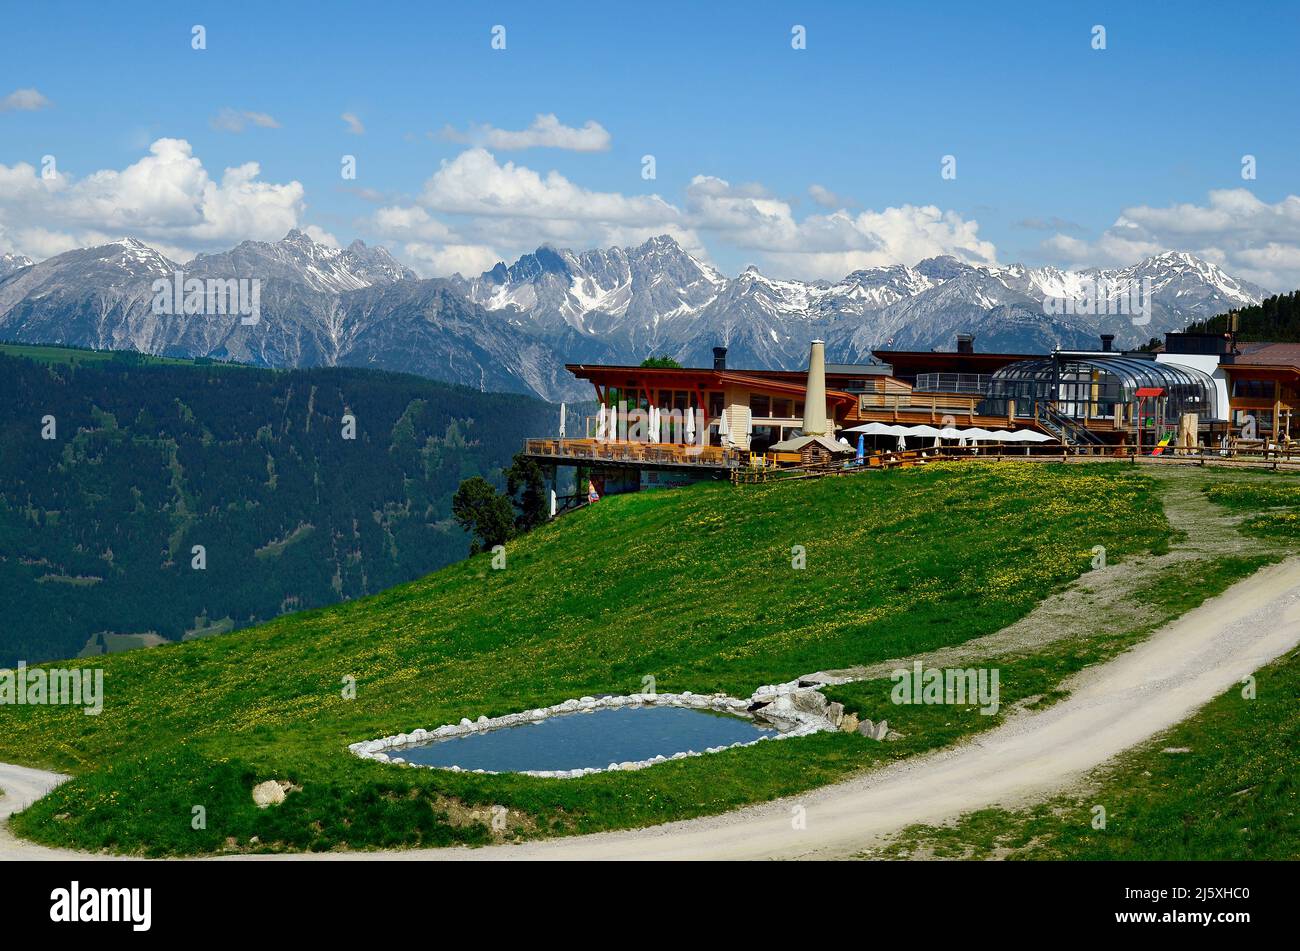 Jerzens, Österreich - 24. Juni 2016: Hochzeiger- Haus, cfe-Restaurant und Gipfelstation für Seilbahn mit Blick auf tyrolen-alpen Stockfoto